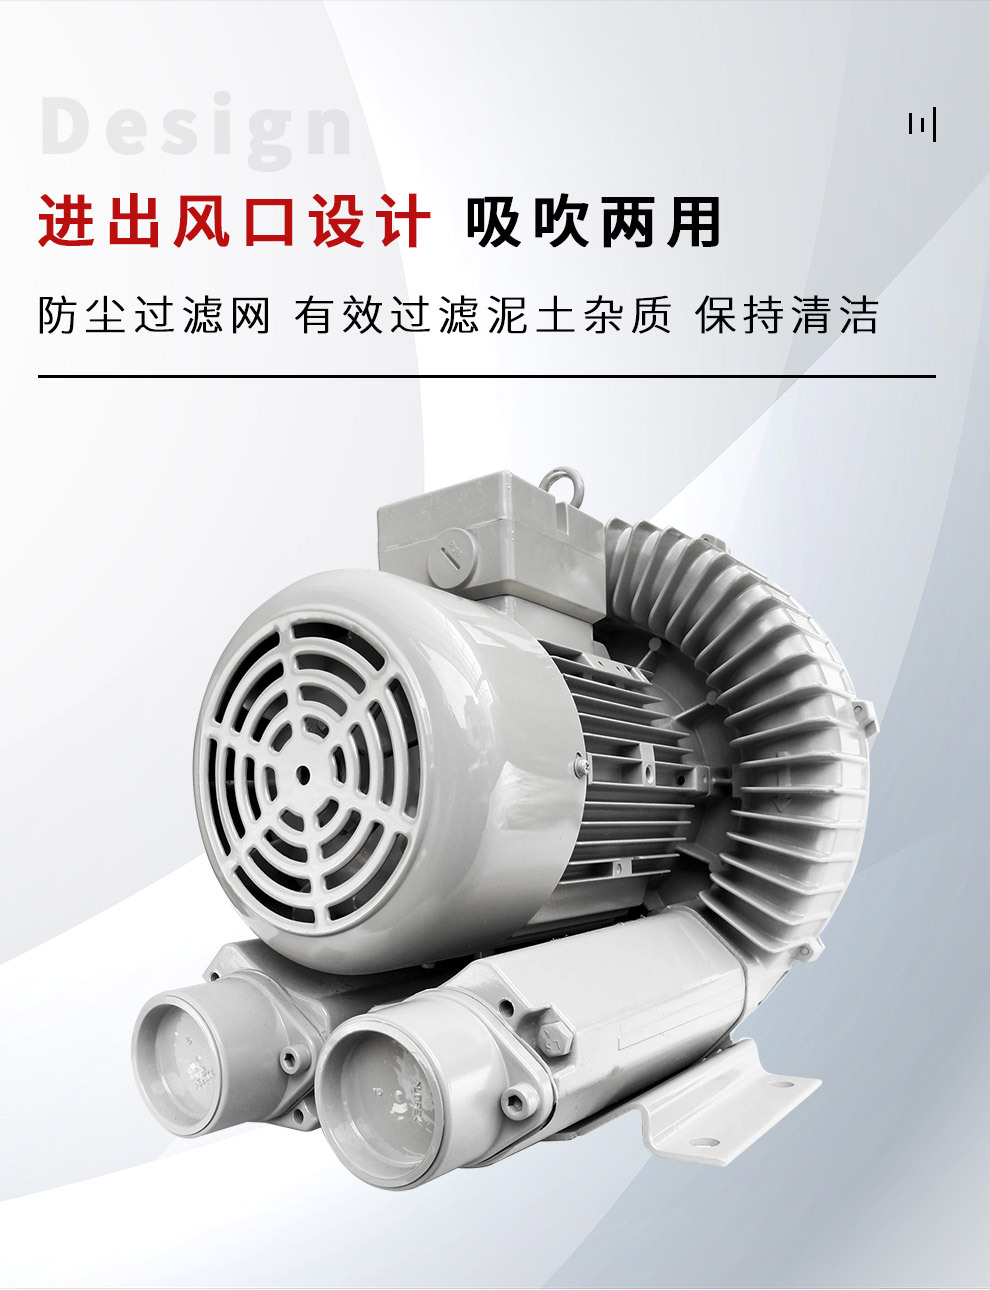 风量大台湾贺欣高压鼓风机 RB40-520 Ho Hsing 机械工业通用鼓风机 轻量化低噪音示例图6